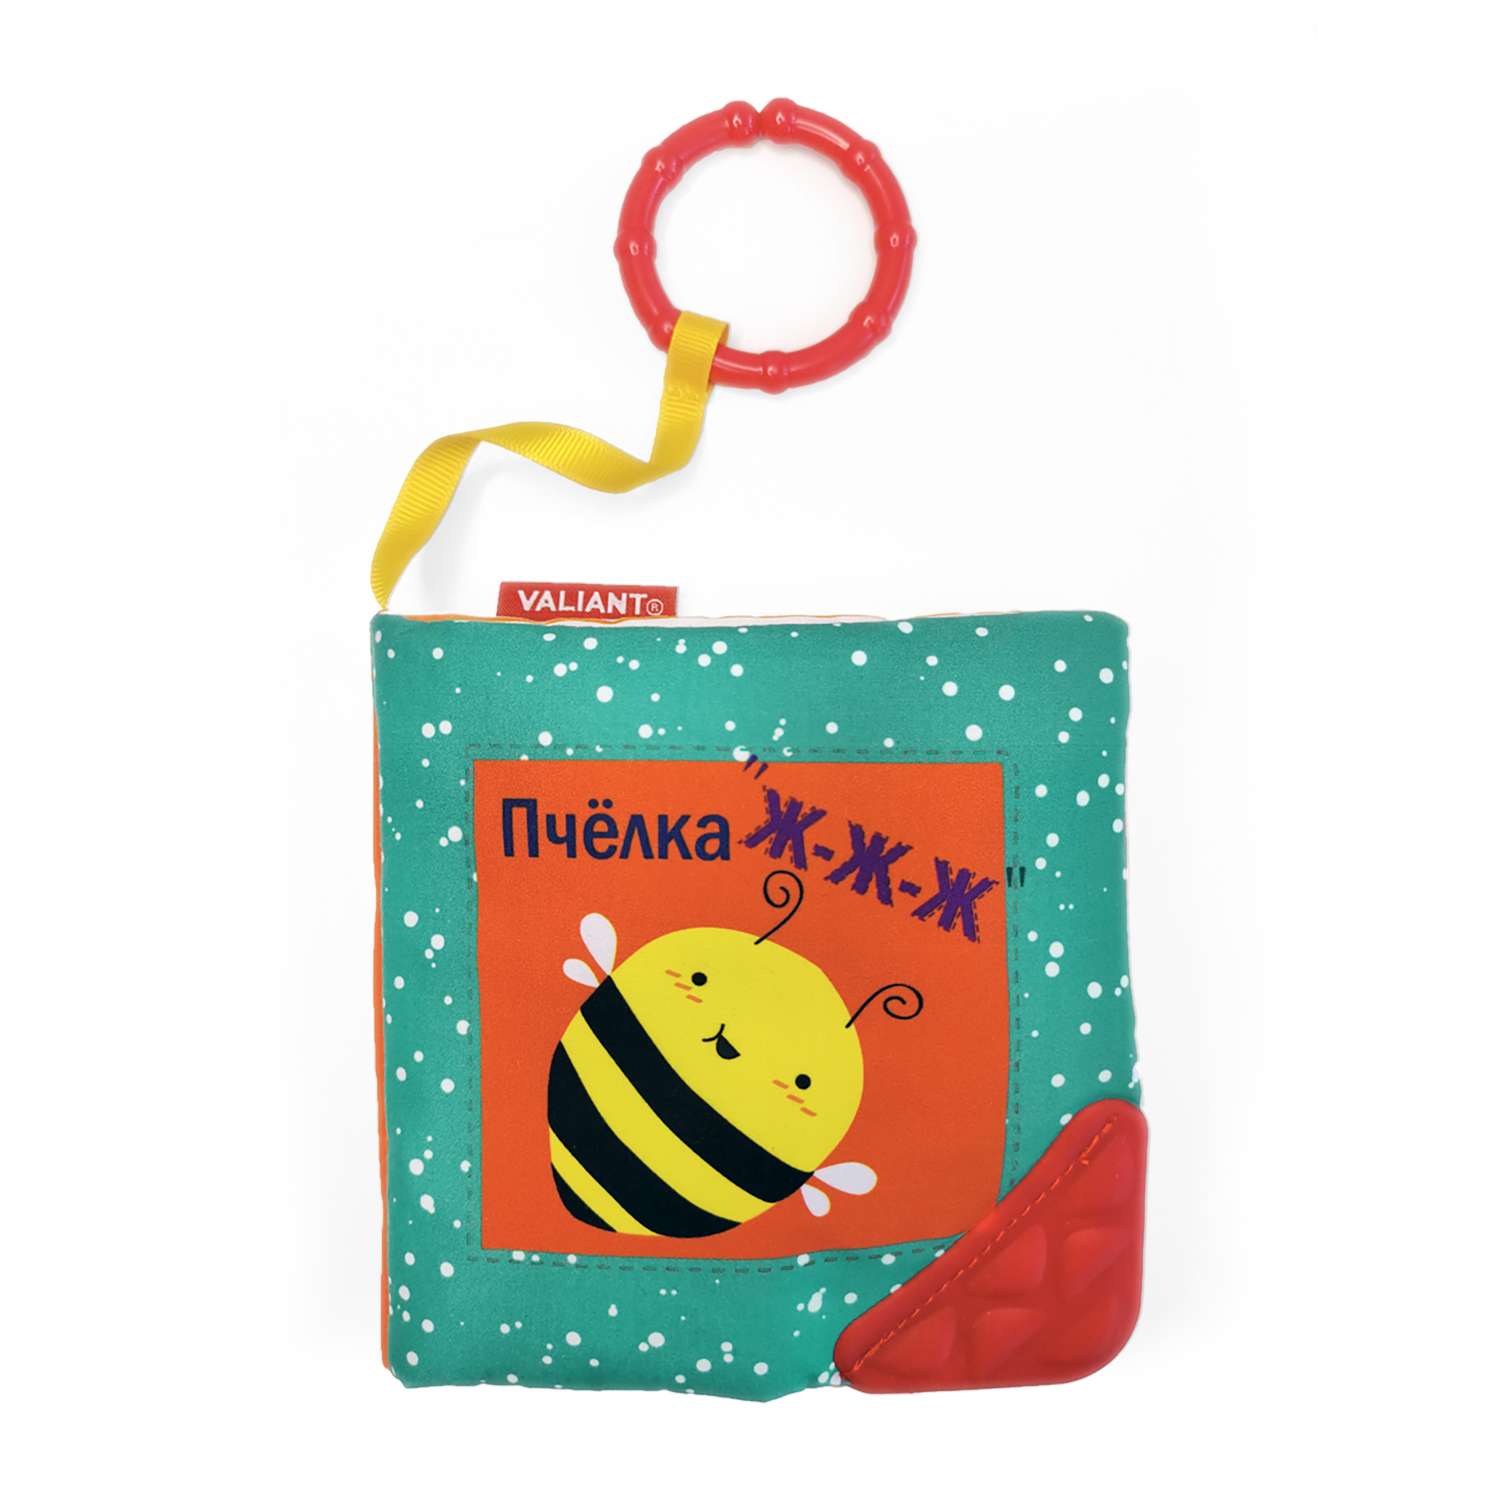 Книжка-игрушка VALIANT для малышей «Пчёлка ж-ж-ж» с прорезывателем и подвесом - фото 1